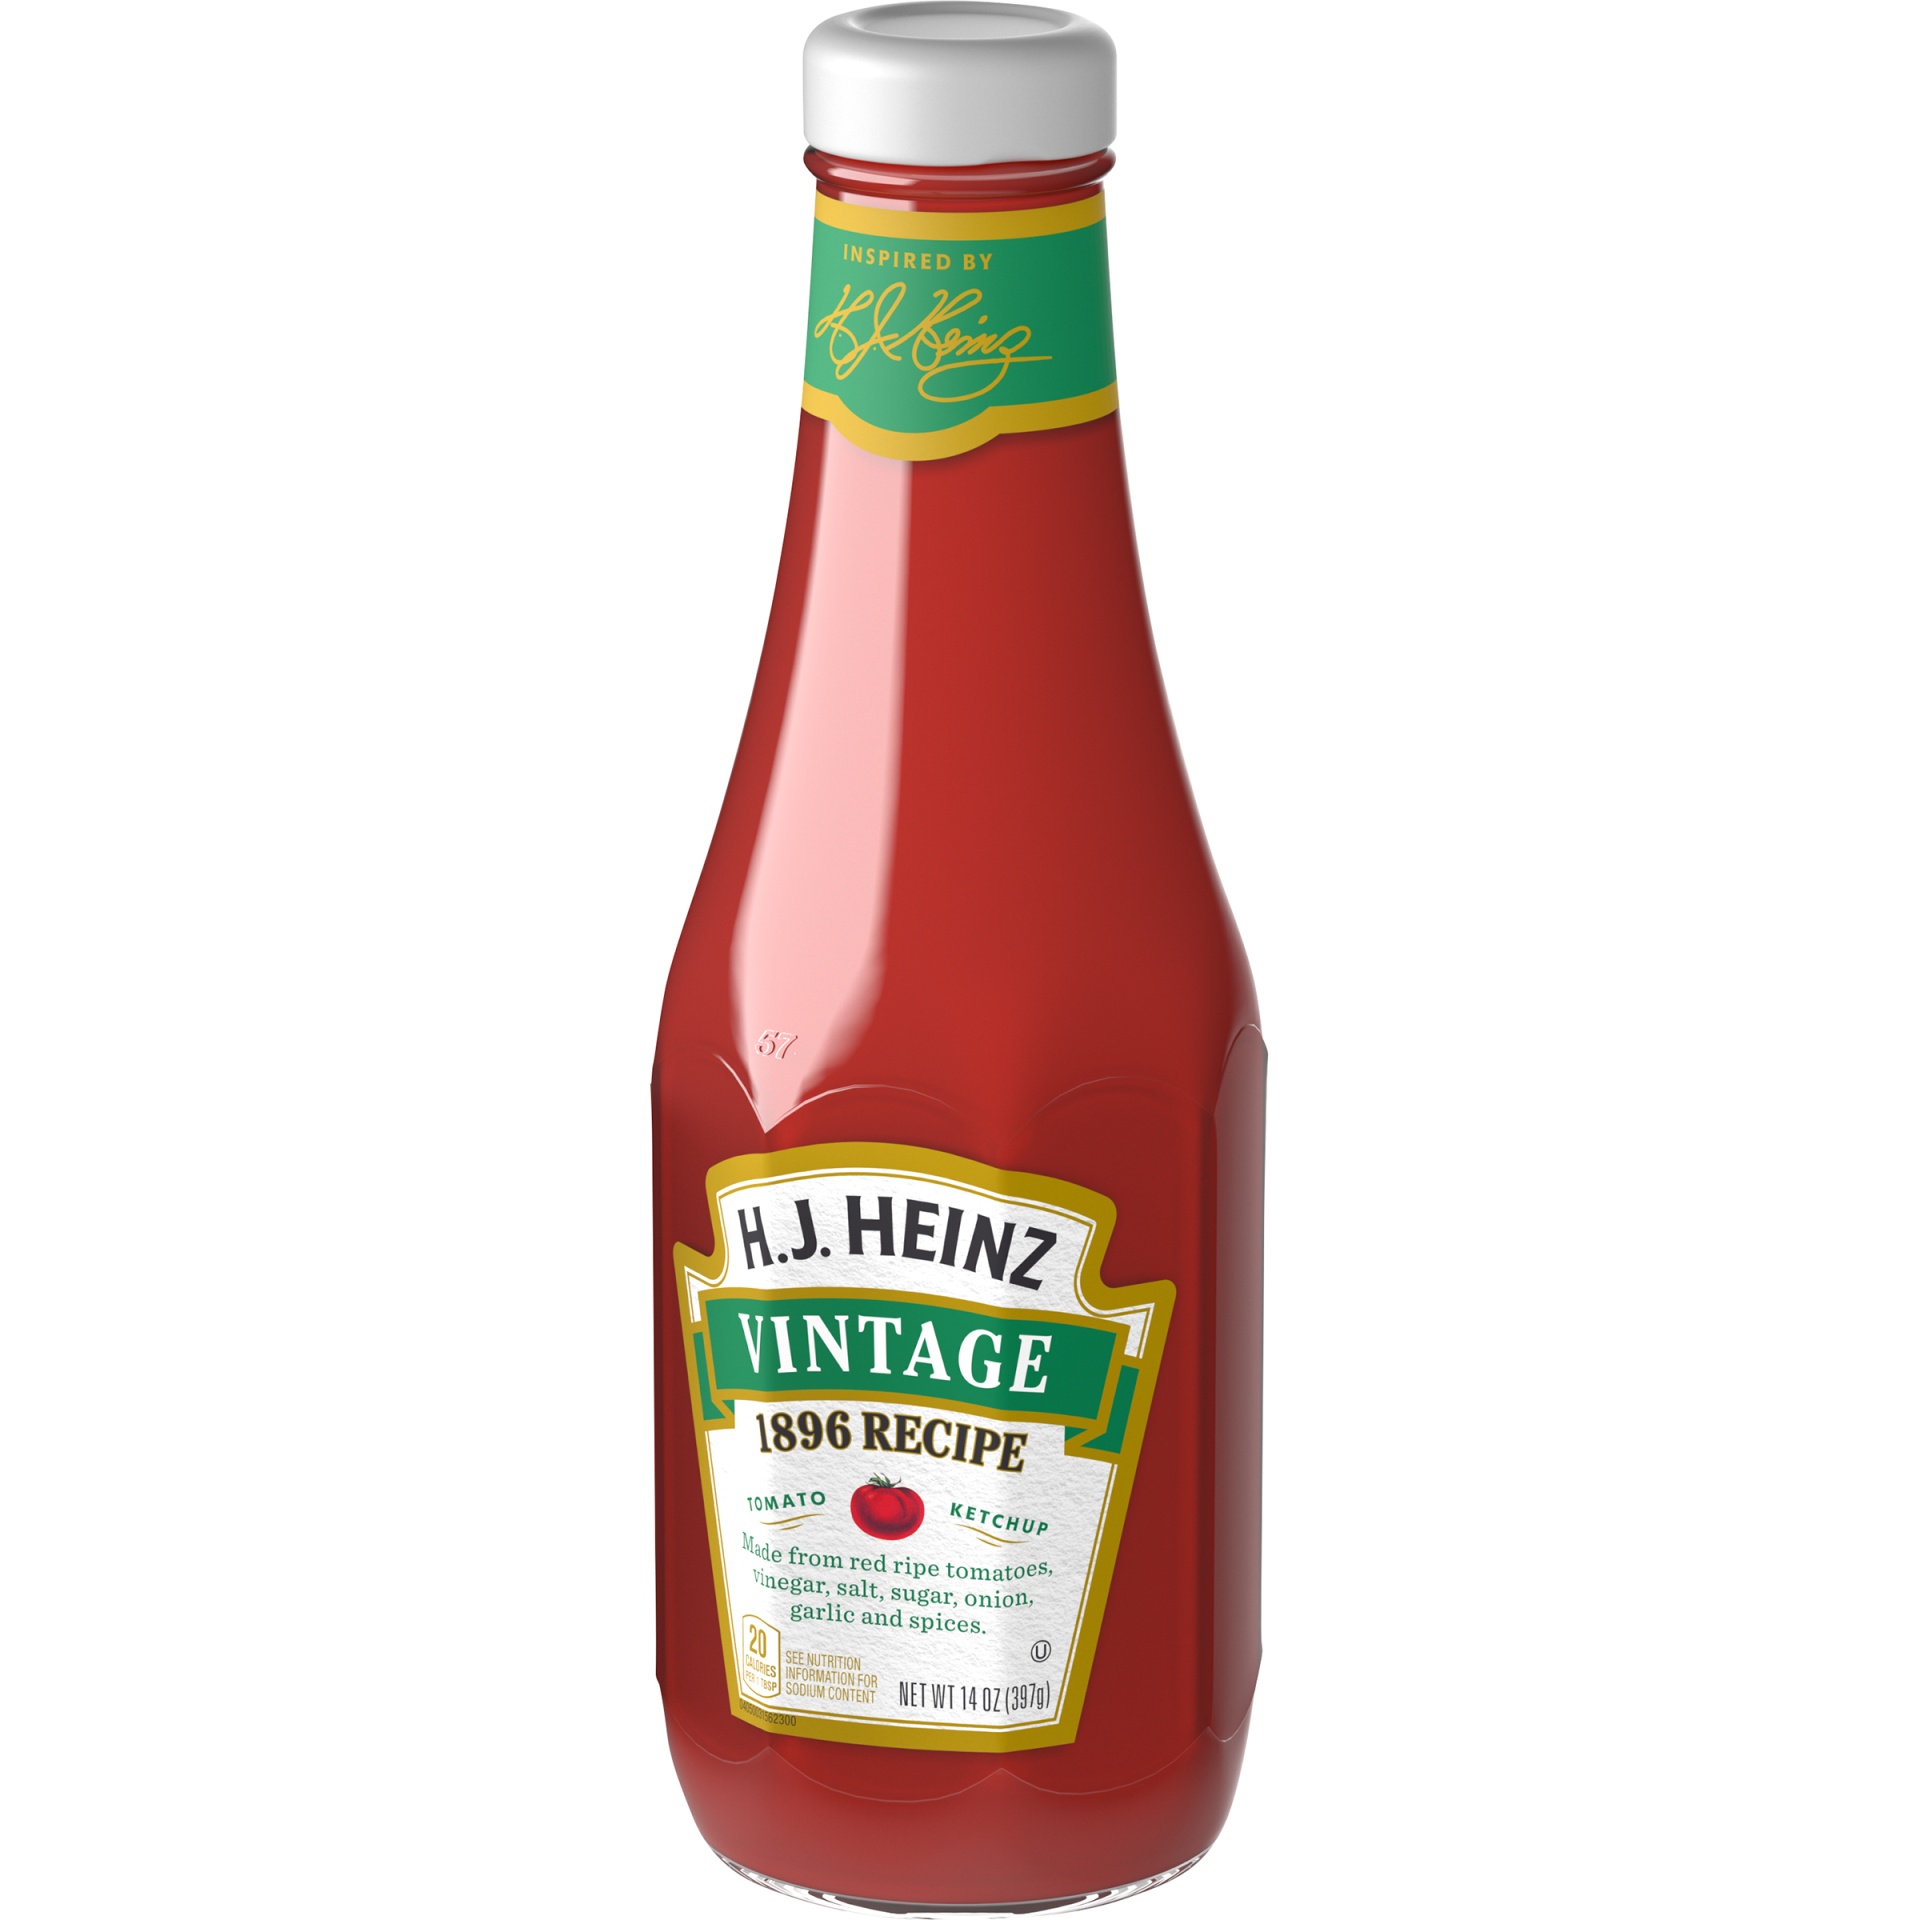 slide 3 of 6, Heinz H.J. Vintage 1896 Recipe Tomato Ketchup Bottle, 14 oz